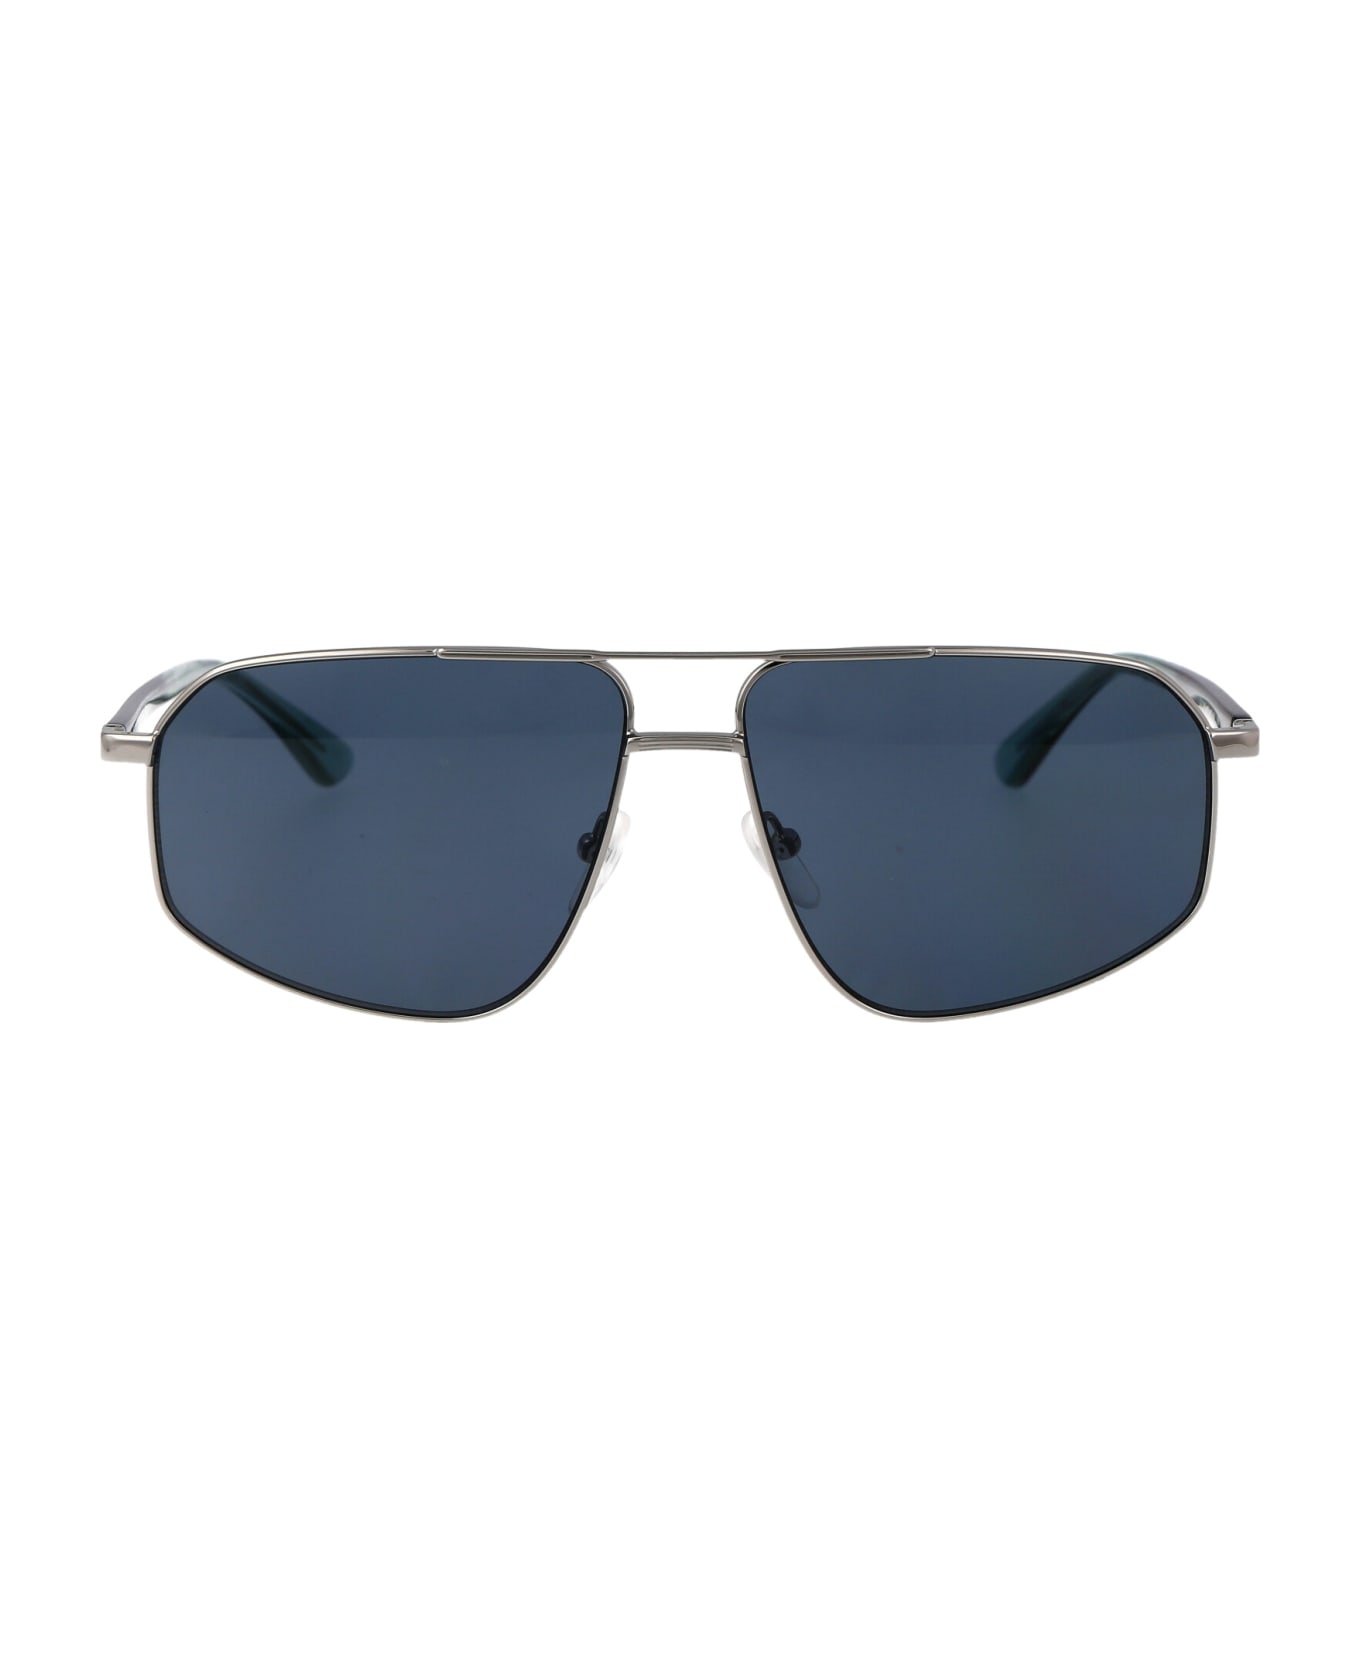 Calvin Klein Ck23126s Sunglasses - 014 LIGHT GUNMETAL サングラス